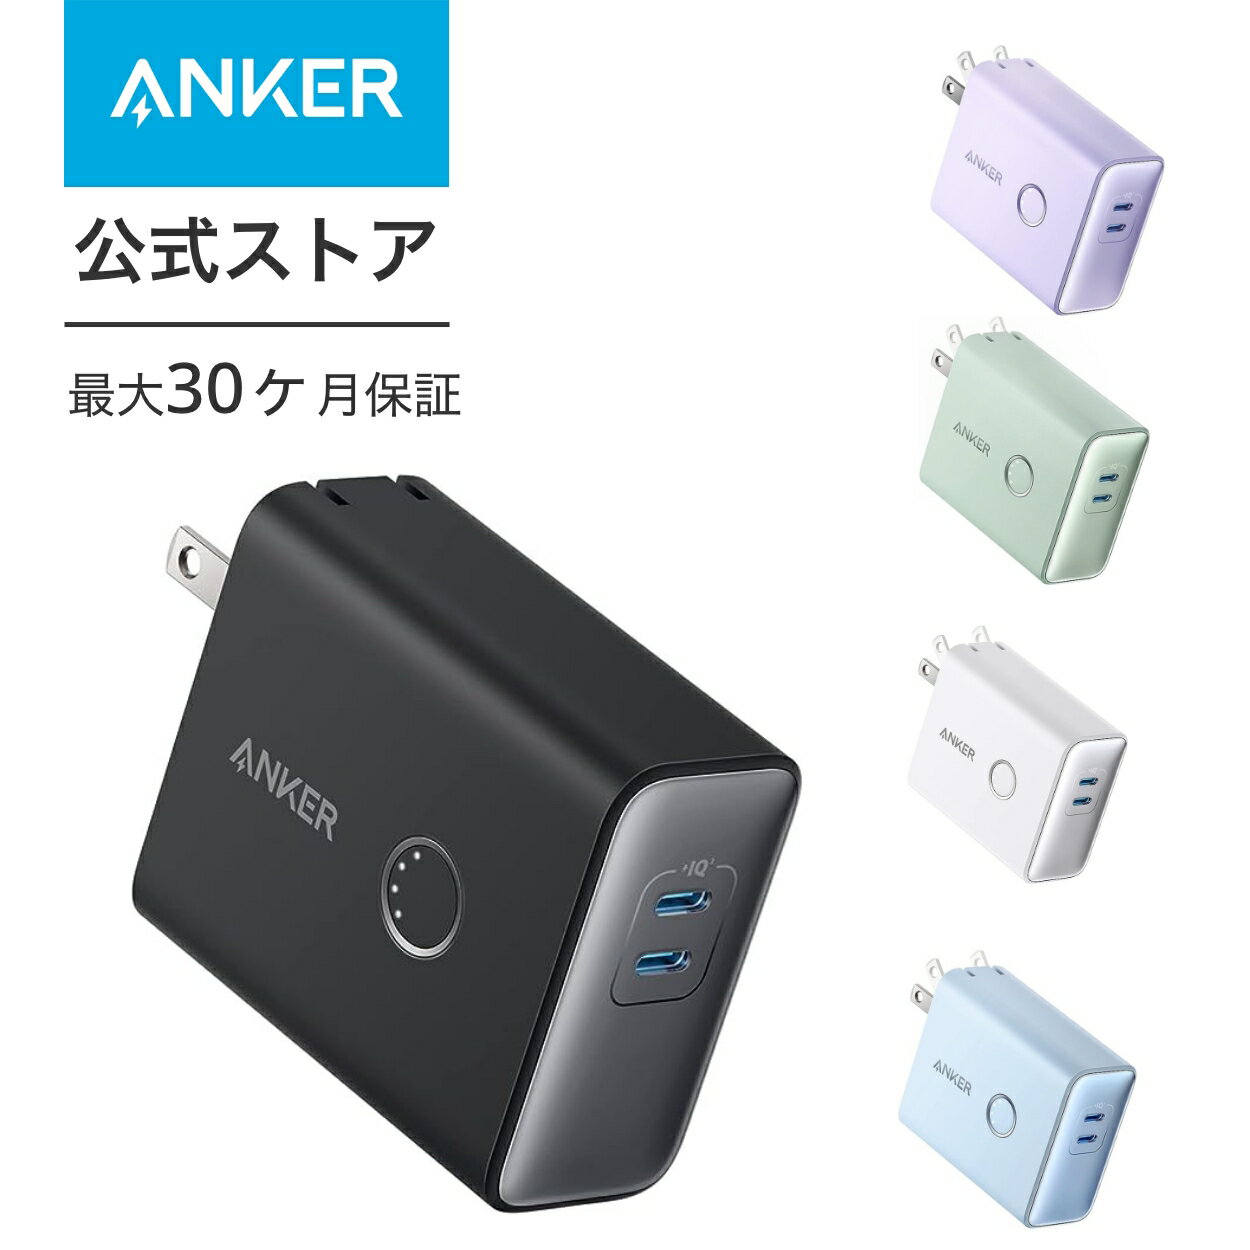 【一部あす楽対応】Anker 521 Power Bank 